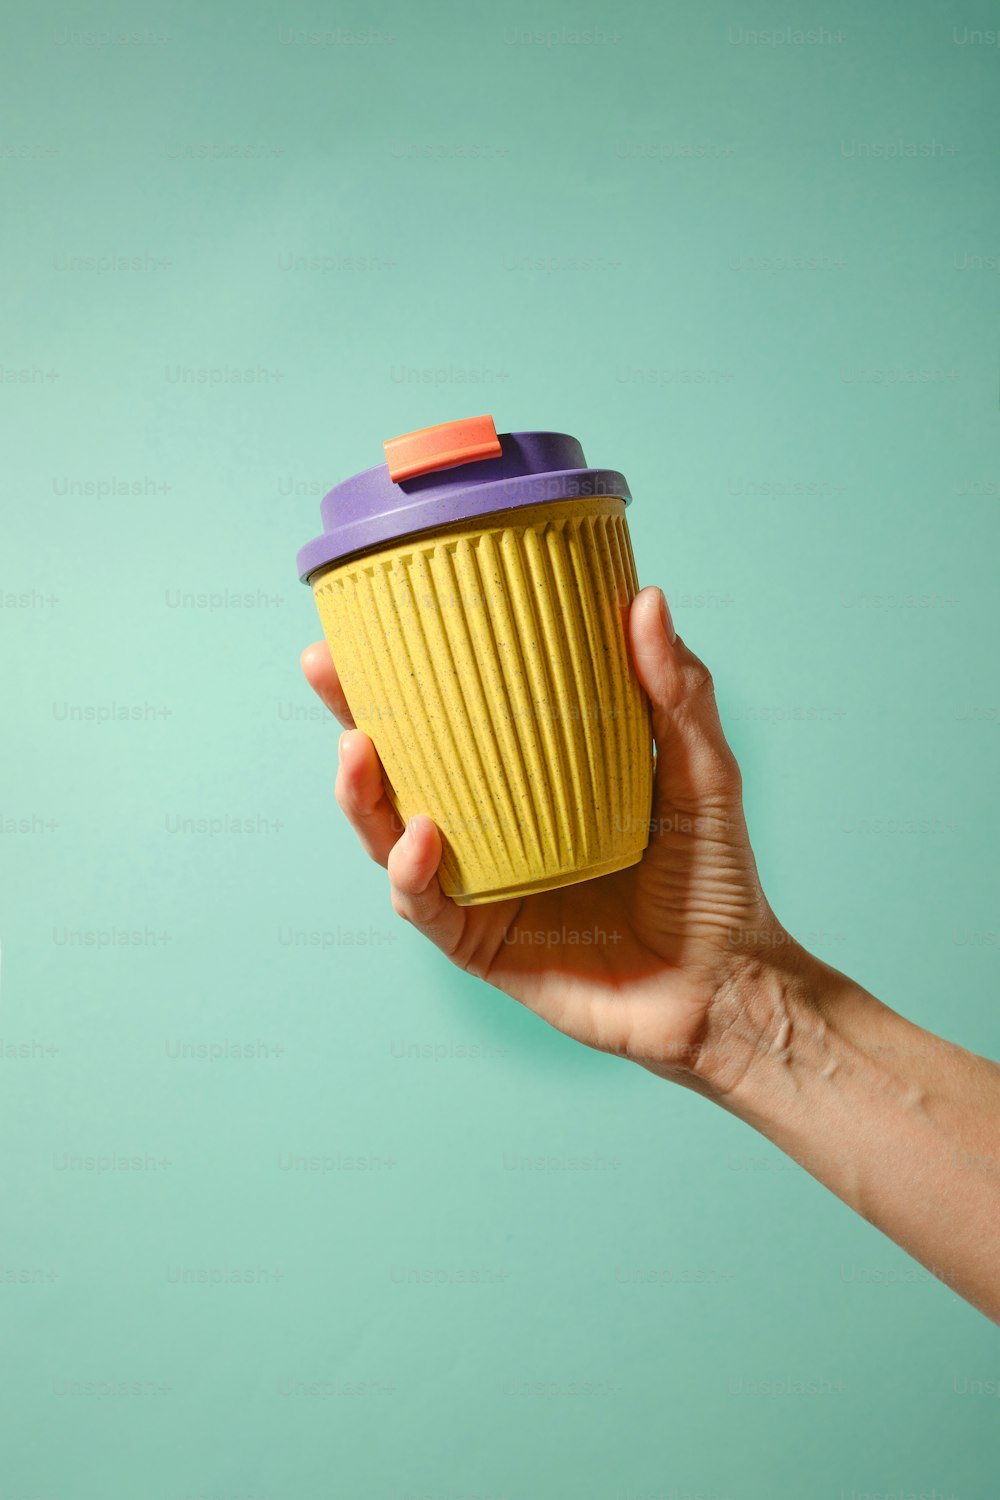 eine Hand, die einen gelben Becher mit einem violetten Deckel hält